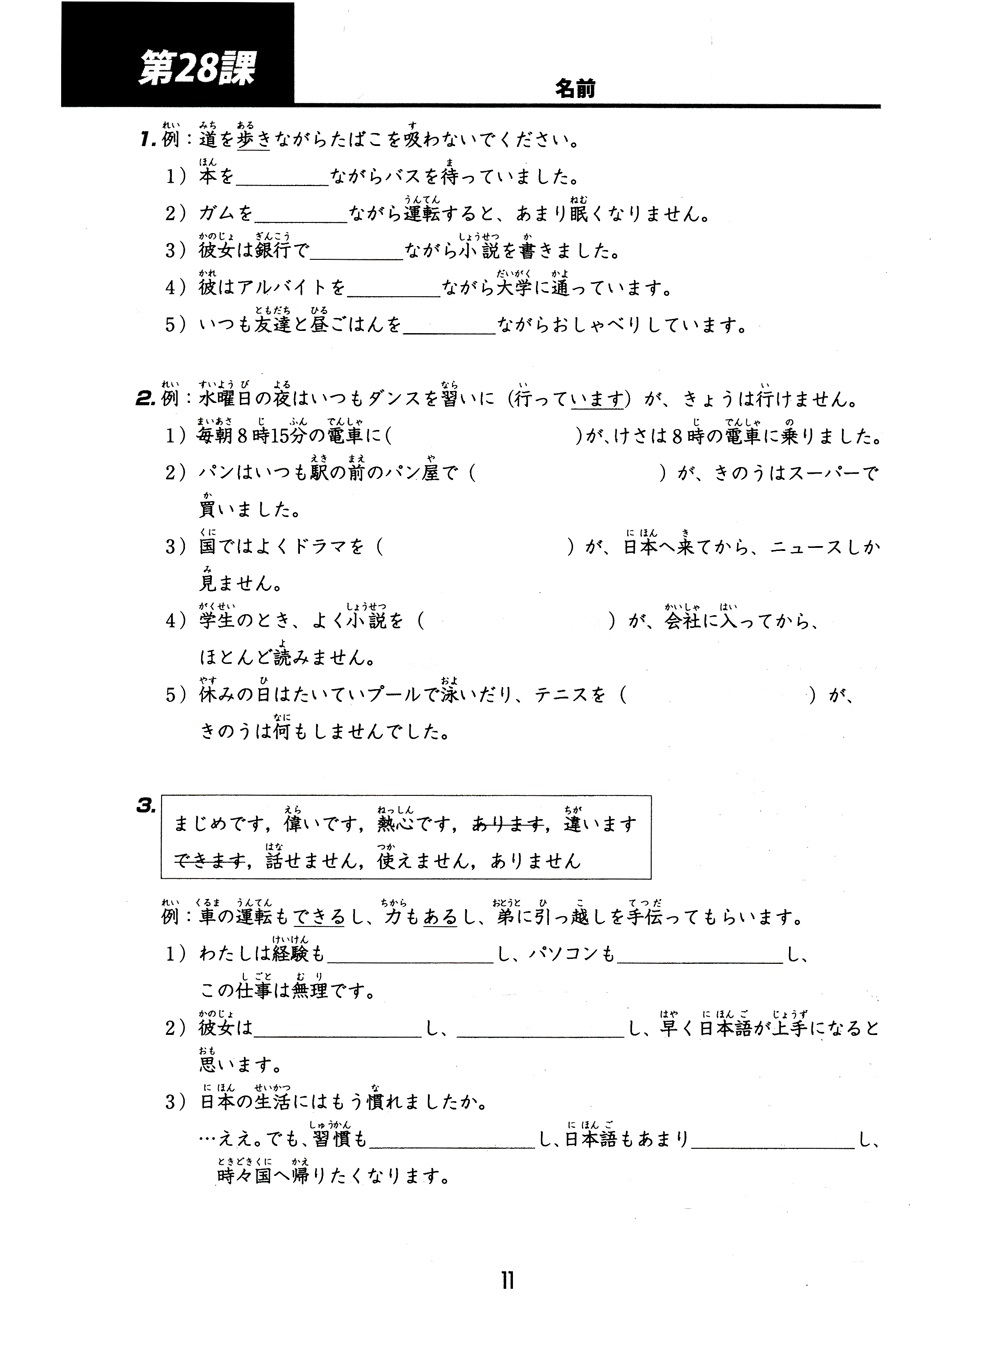 Tiếng Nhật Cho Mọi Người - Trình Độ Sơ Cấp 2 - Tổng Hợp Các Bài Tập Chủ Điểm (Bản Mới) - TRẺ